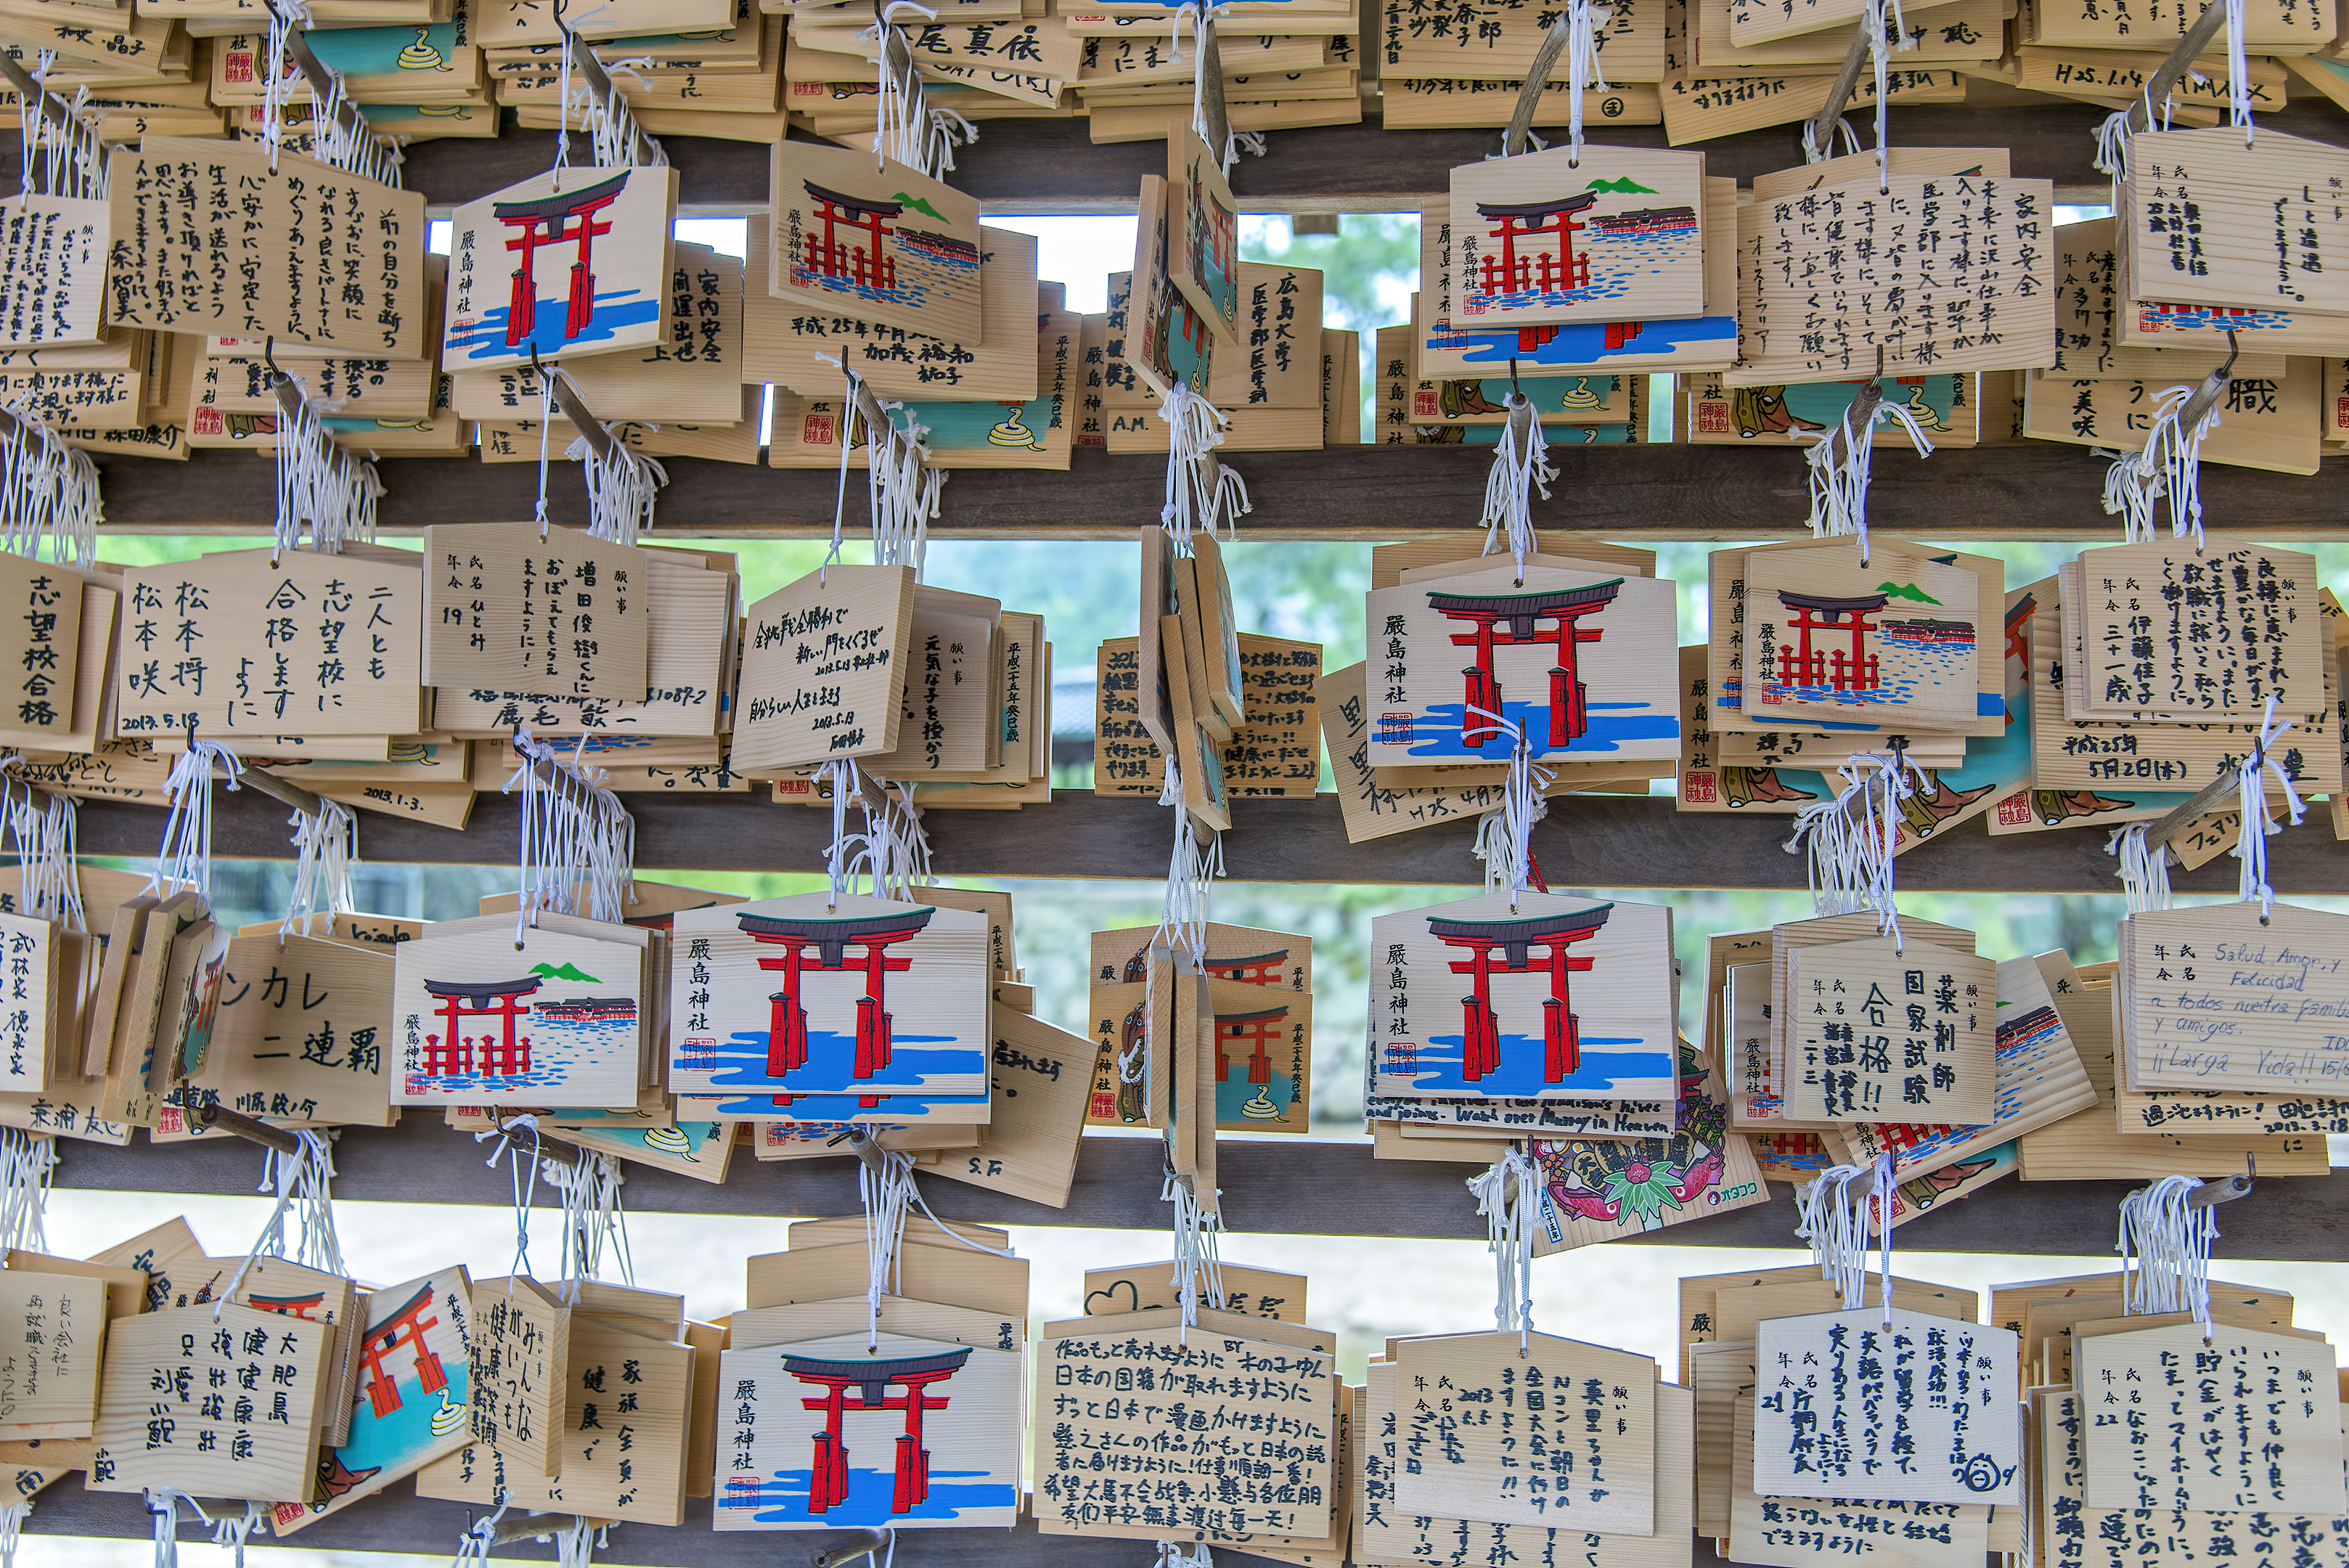 ema miyajima itsukushima jinja shrine